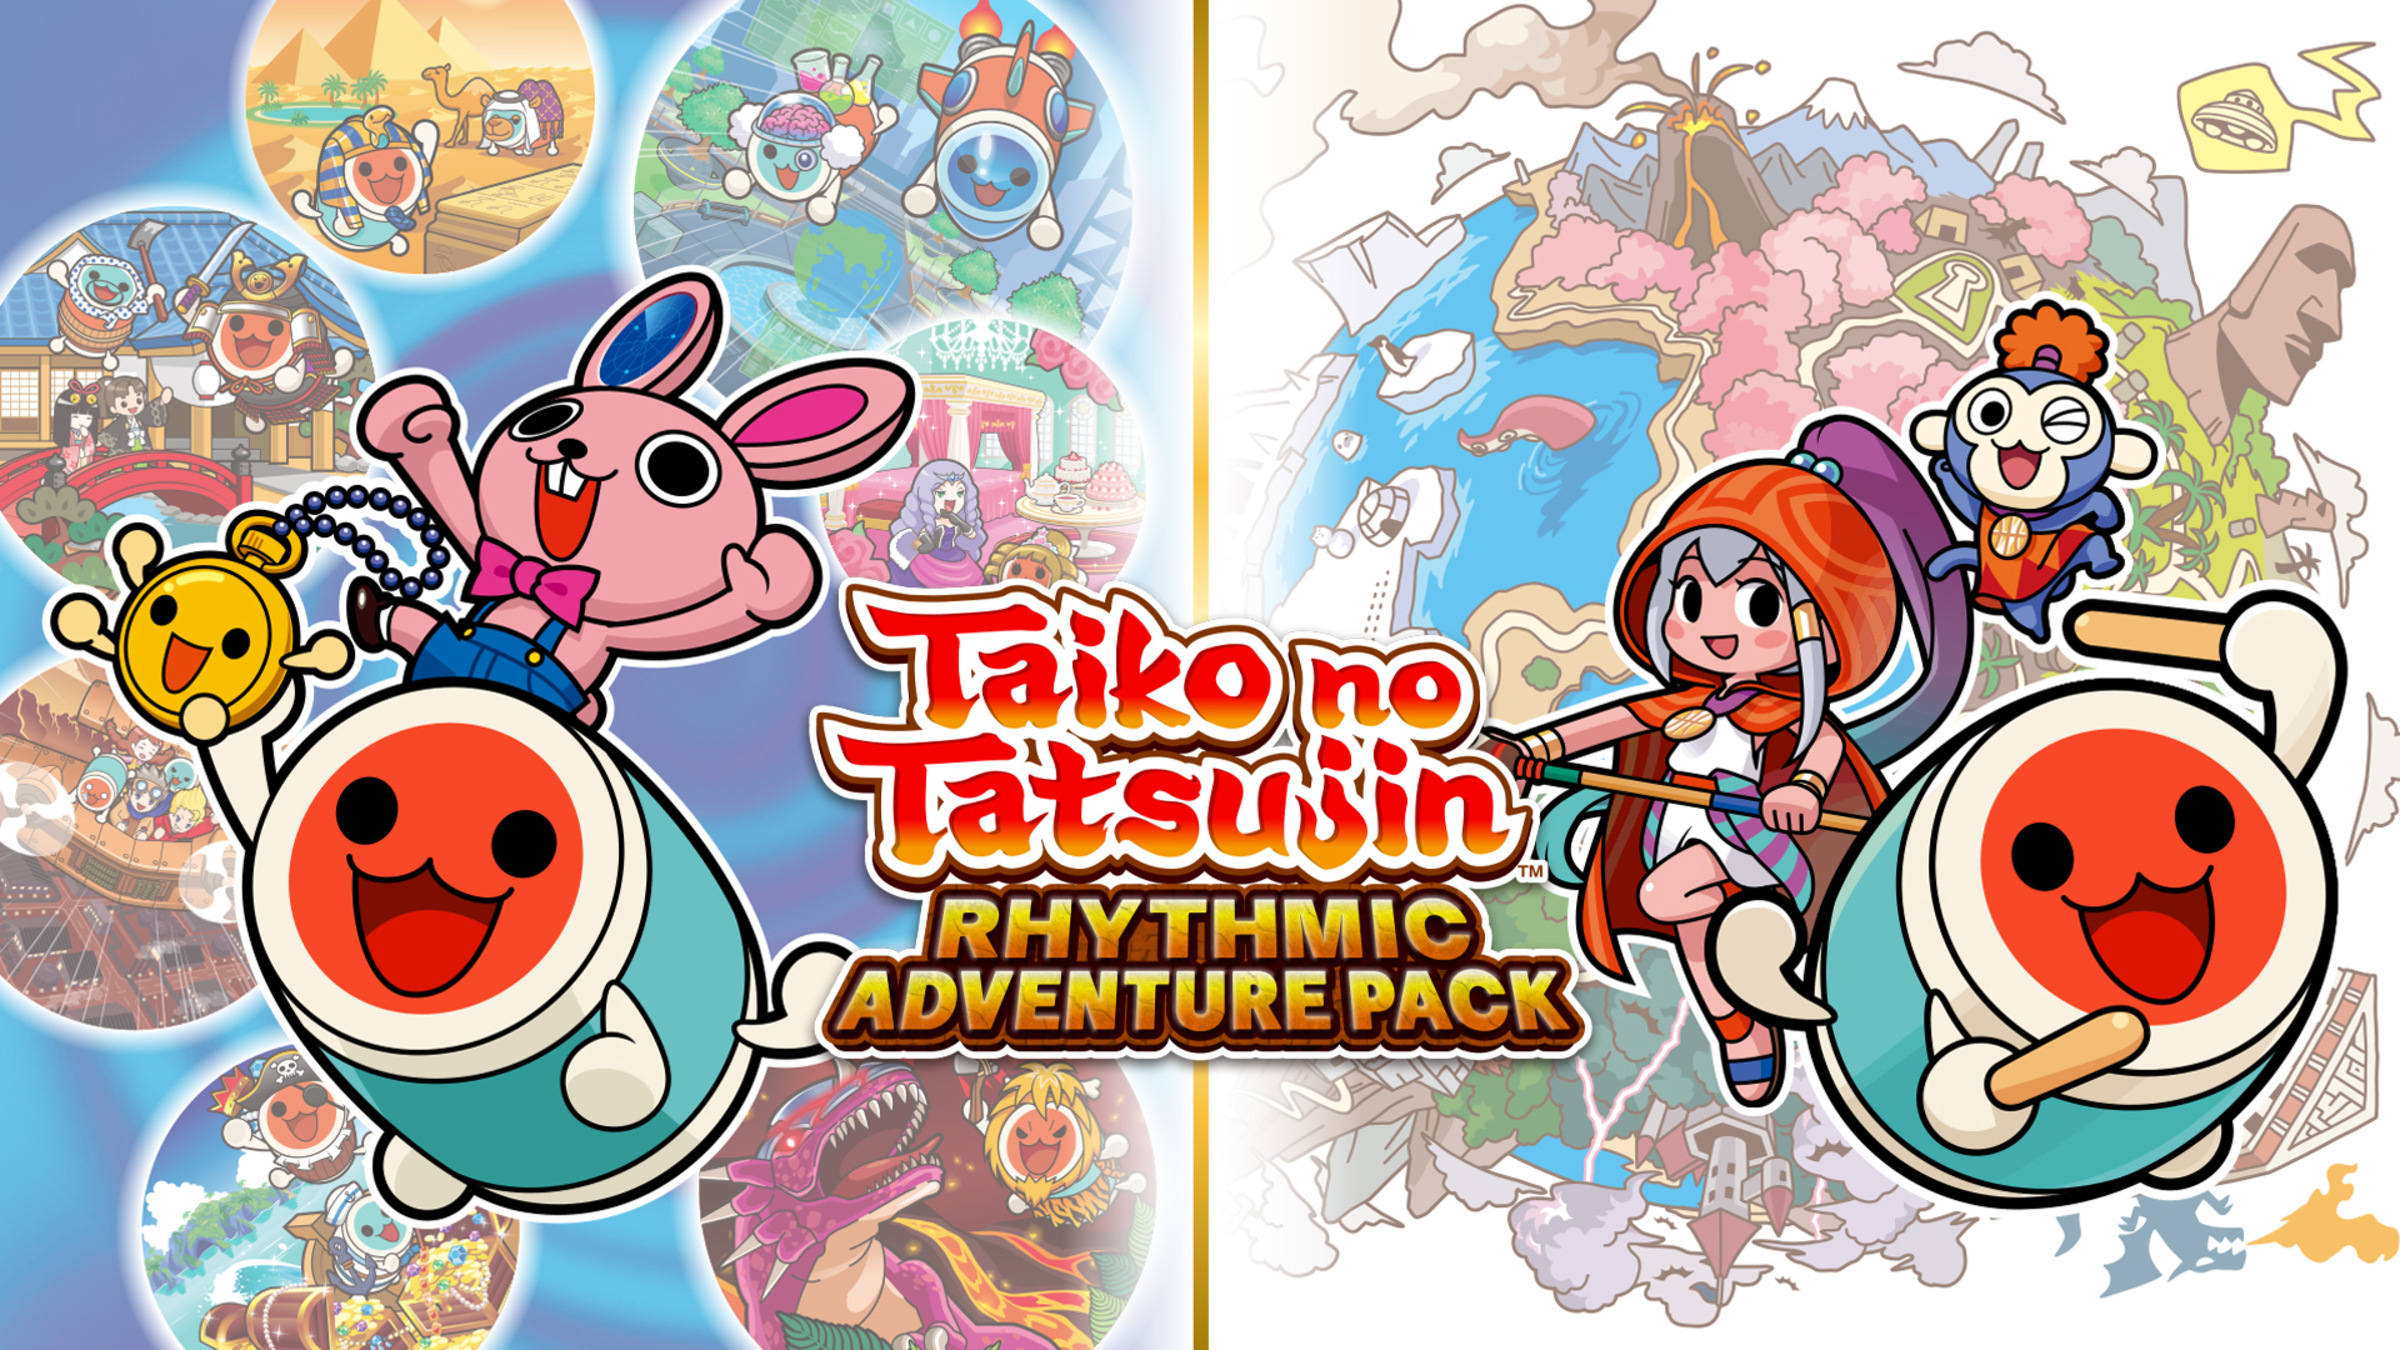 Taiko no Tatsujin: Drum'n'Fun! - Trailer de lançamento (Nintendo